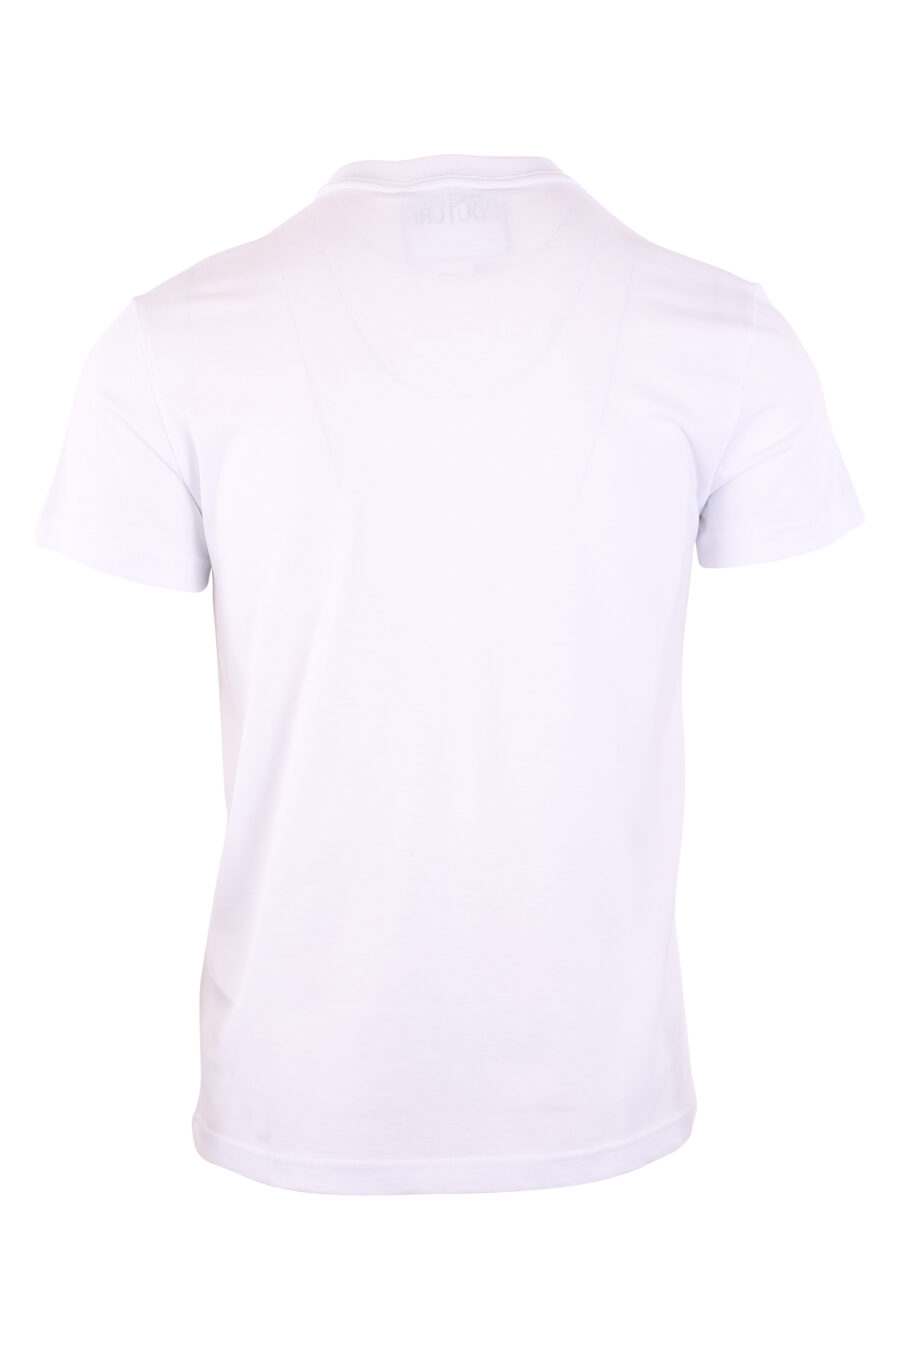 T-shirt weiß mit schwarzem runden Logo klein - IMG 3116